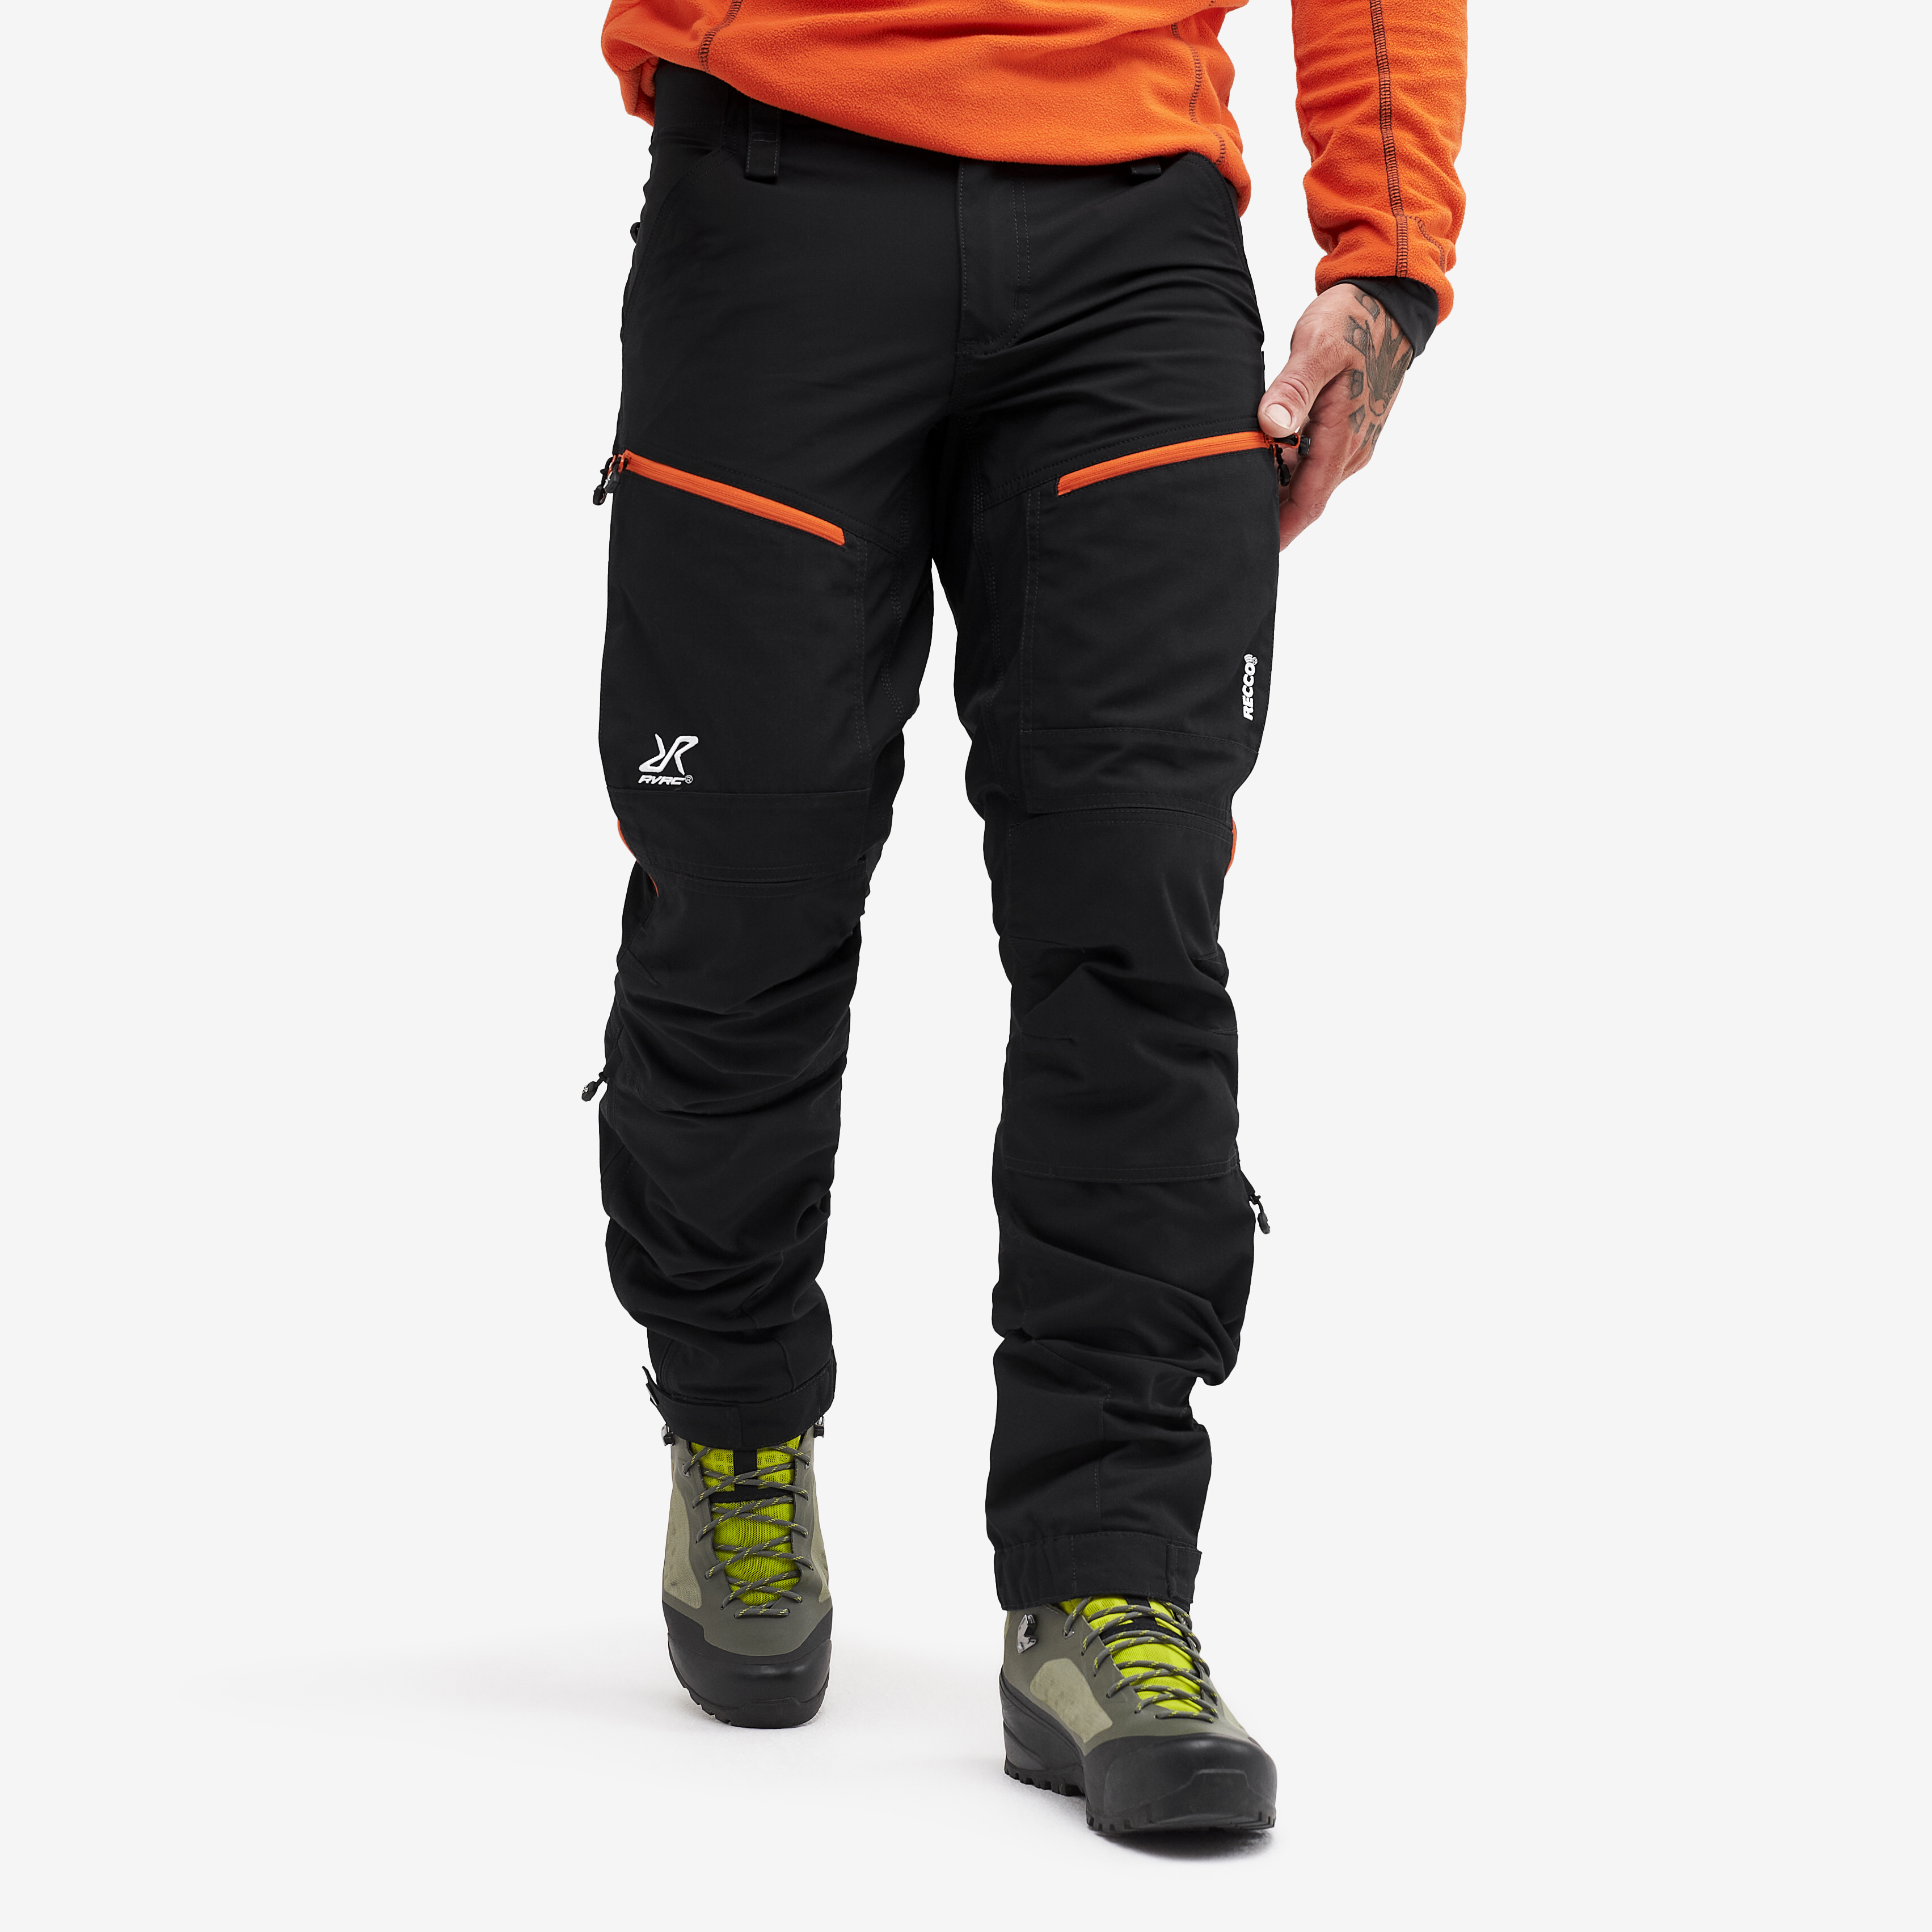 RVRC GP Pro Rescue Pants Black/Orange 2.0 Homme